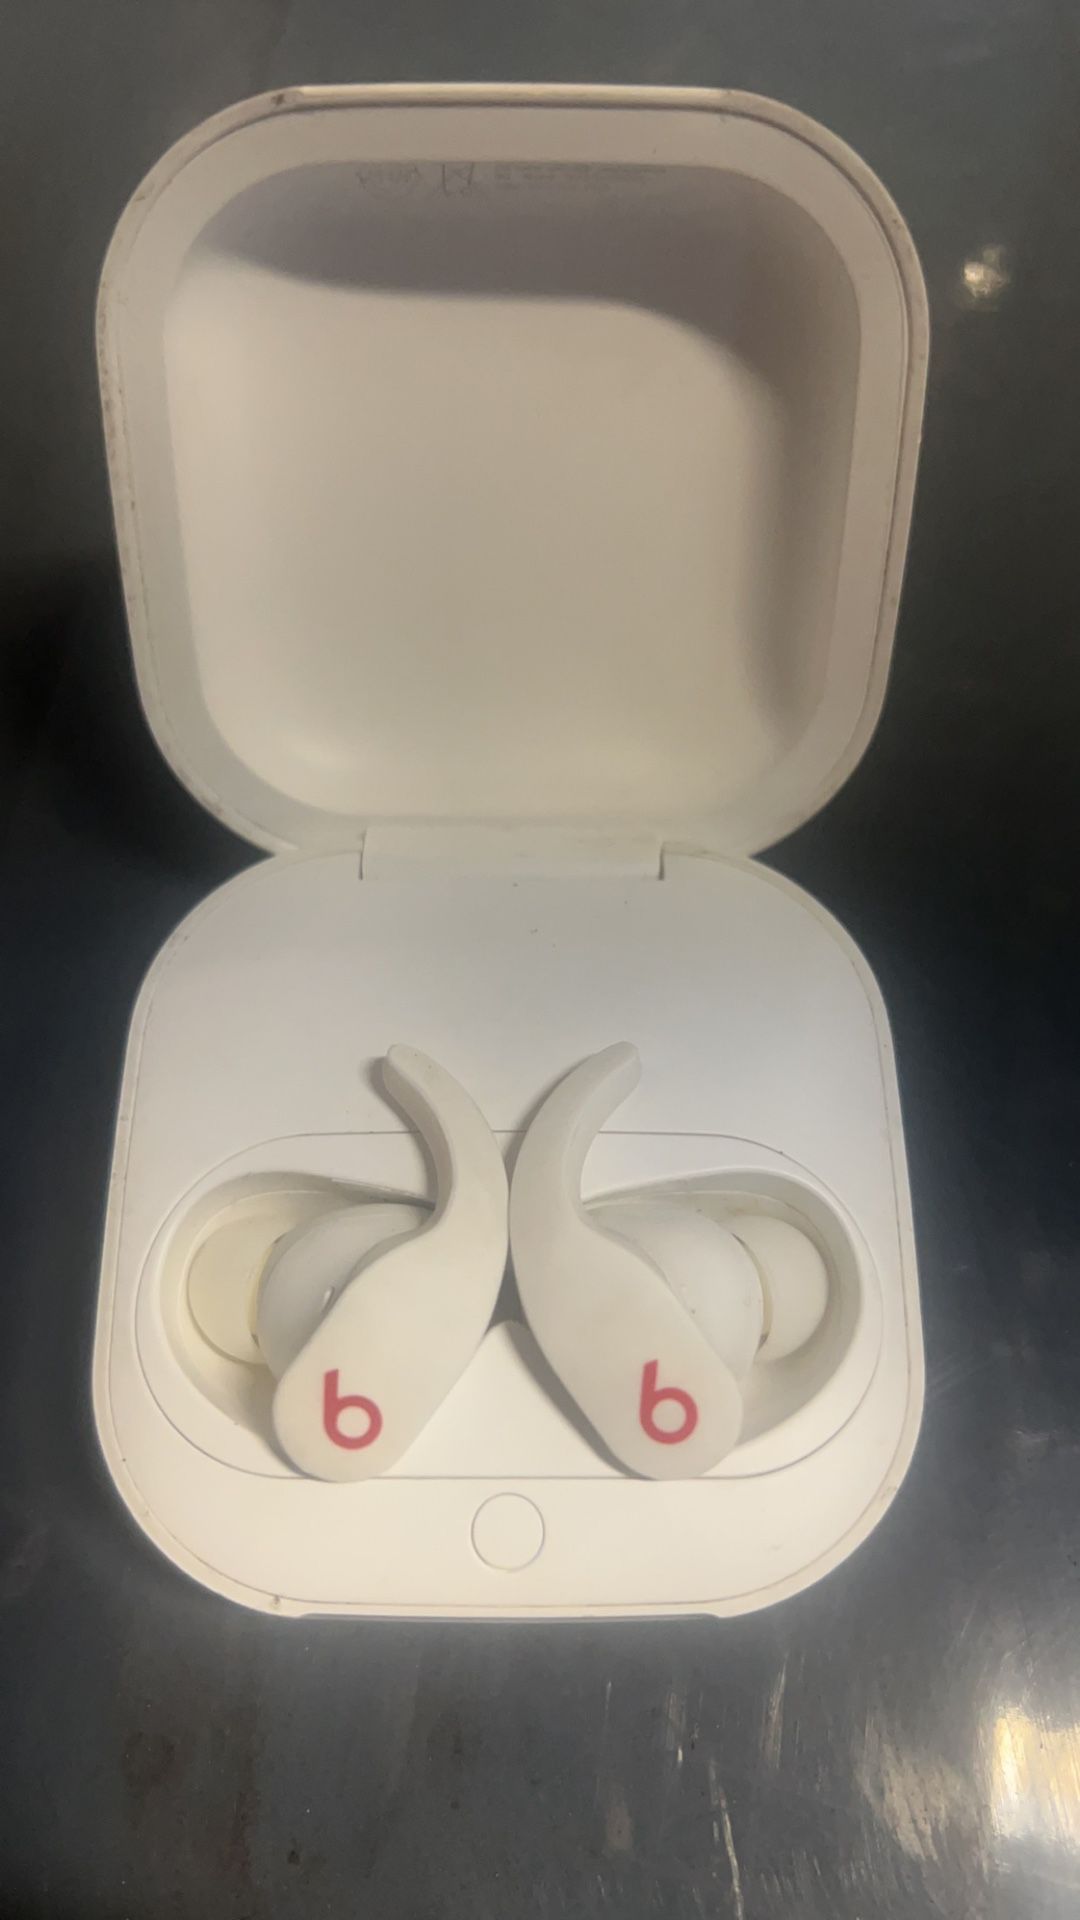 Beats Earbuds Headphones 